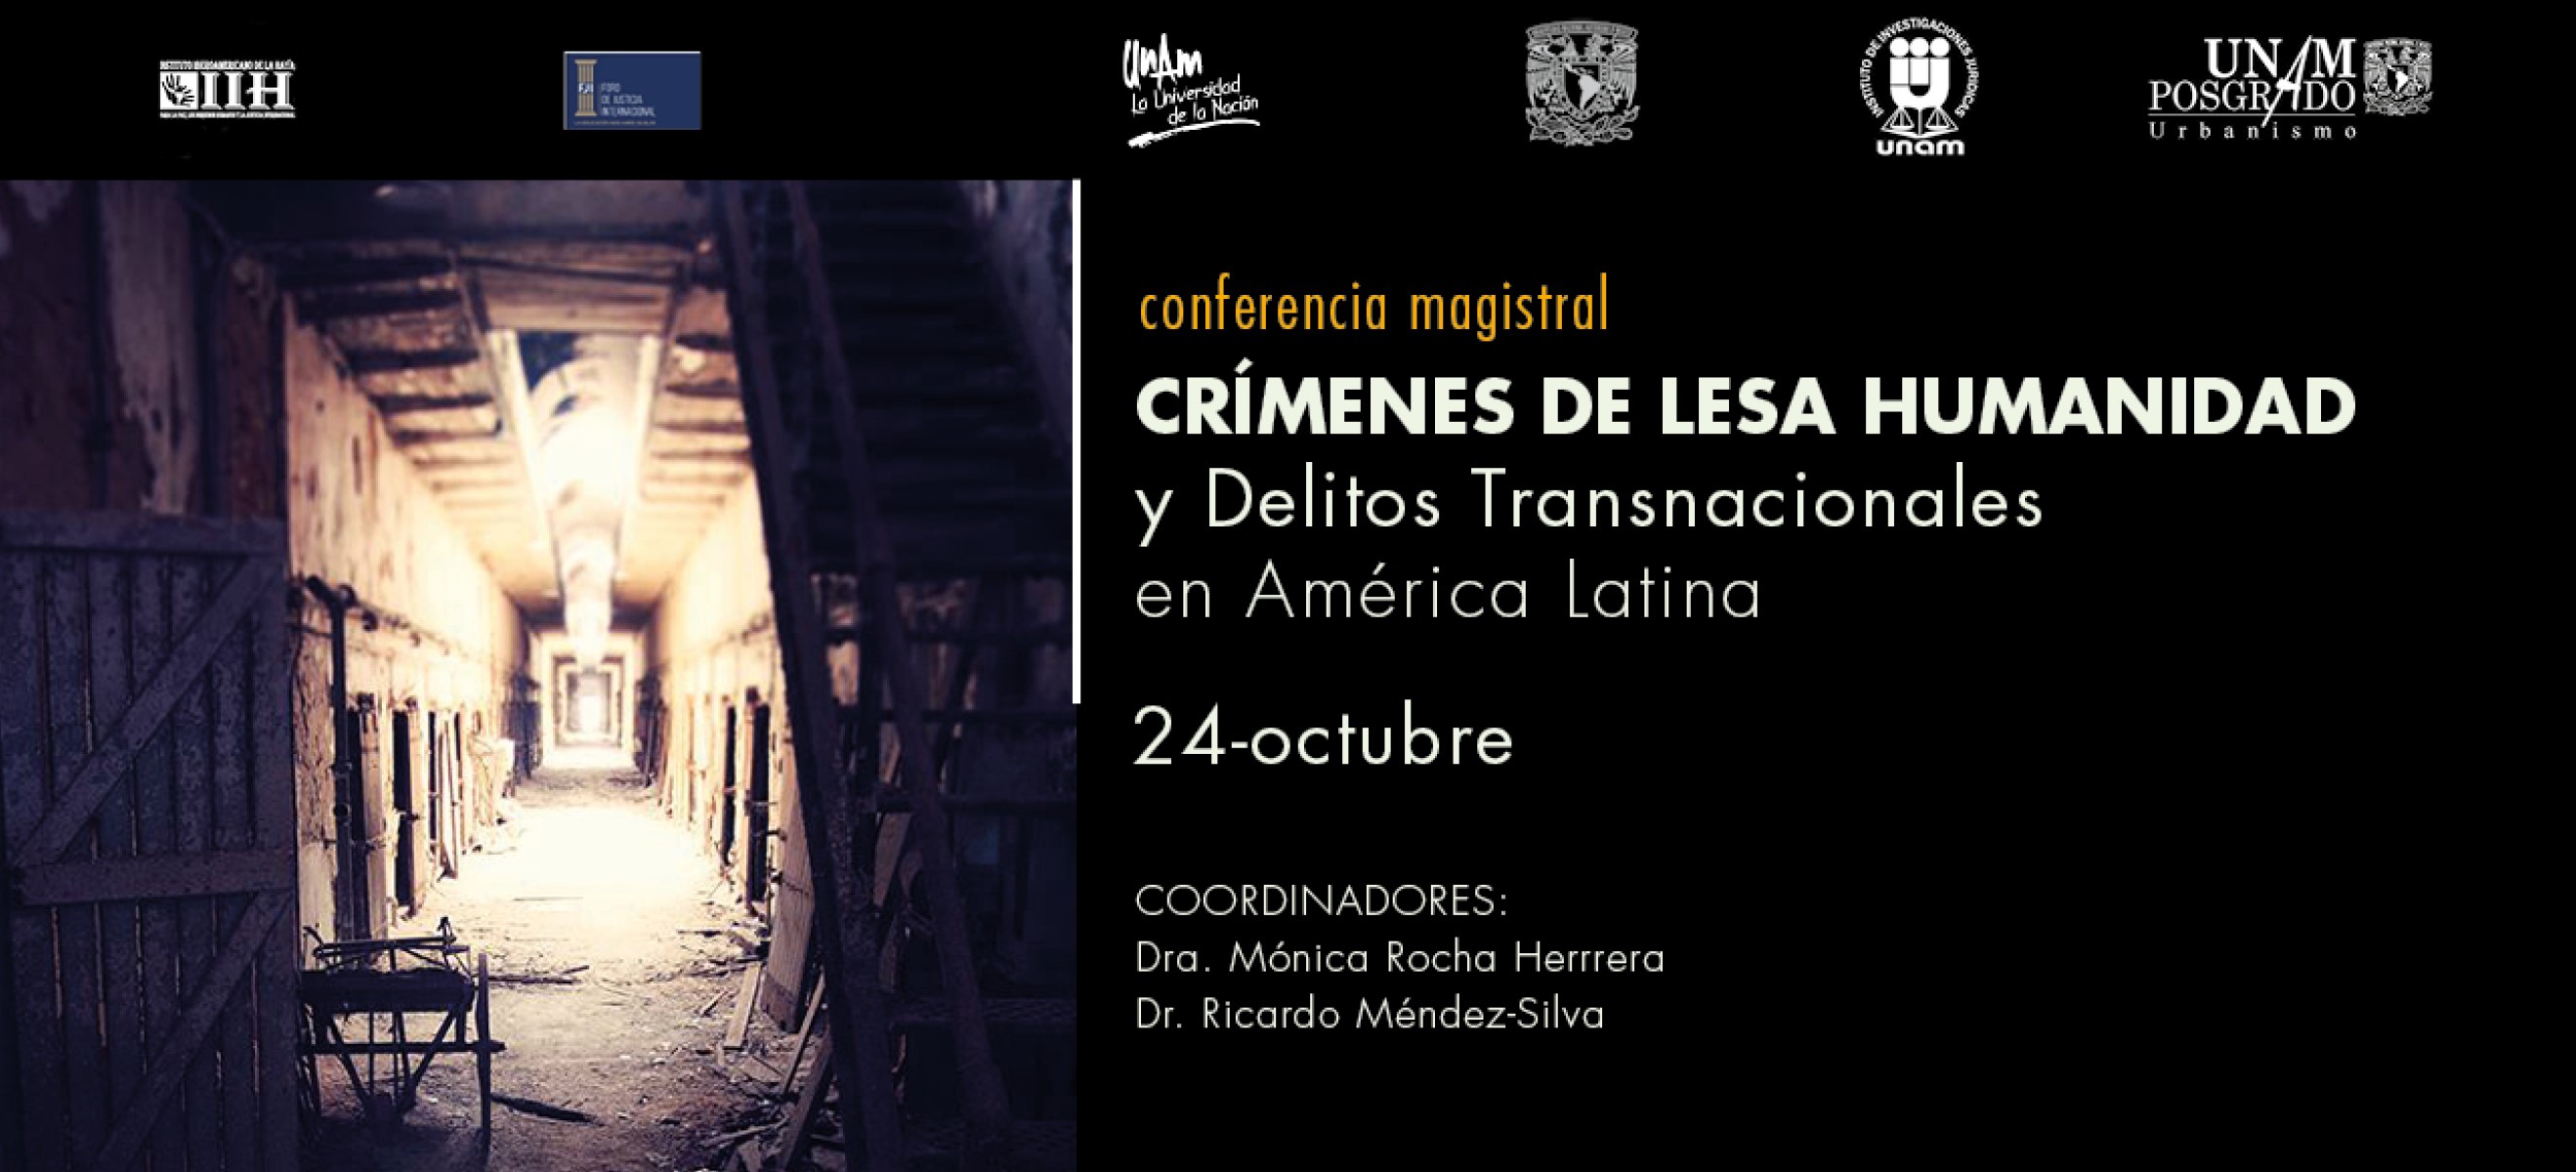 Conferencia magistral Crímenes de lesa humanidad y delitos transnacionales en América Latina